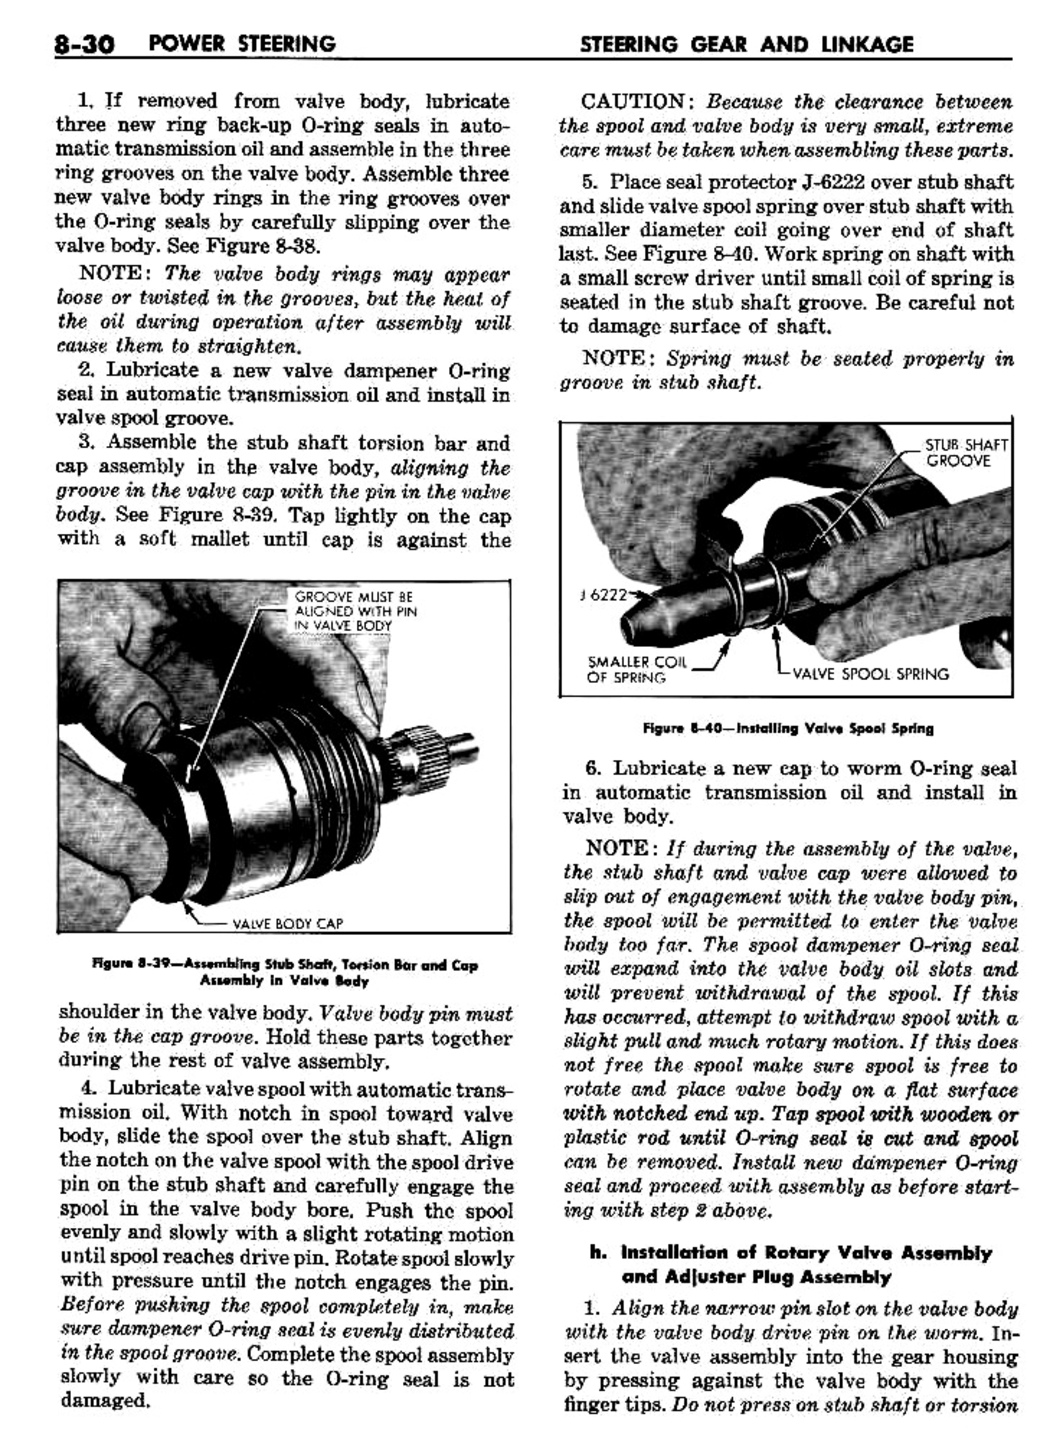 n_09 1960 Buick Shop Manual - Steering-030-030.jpg